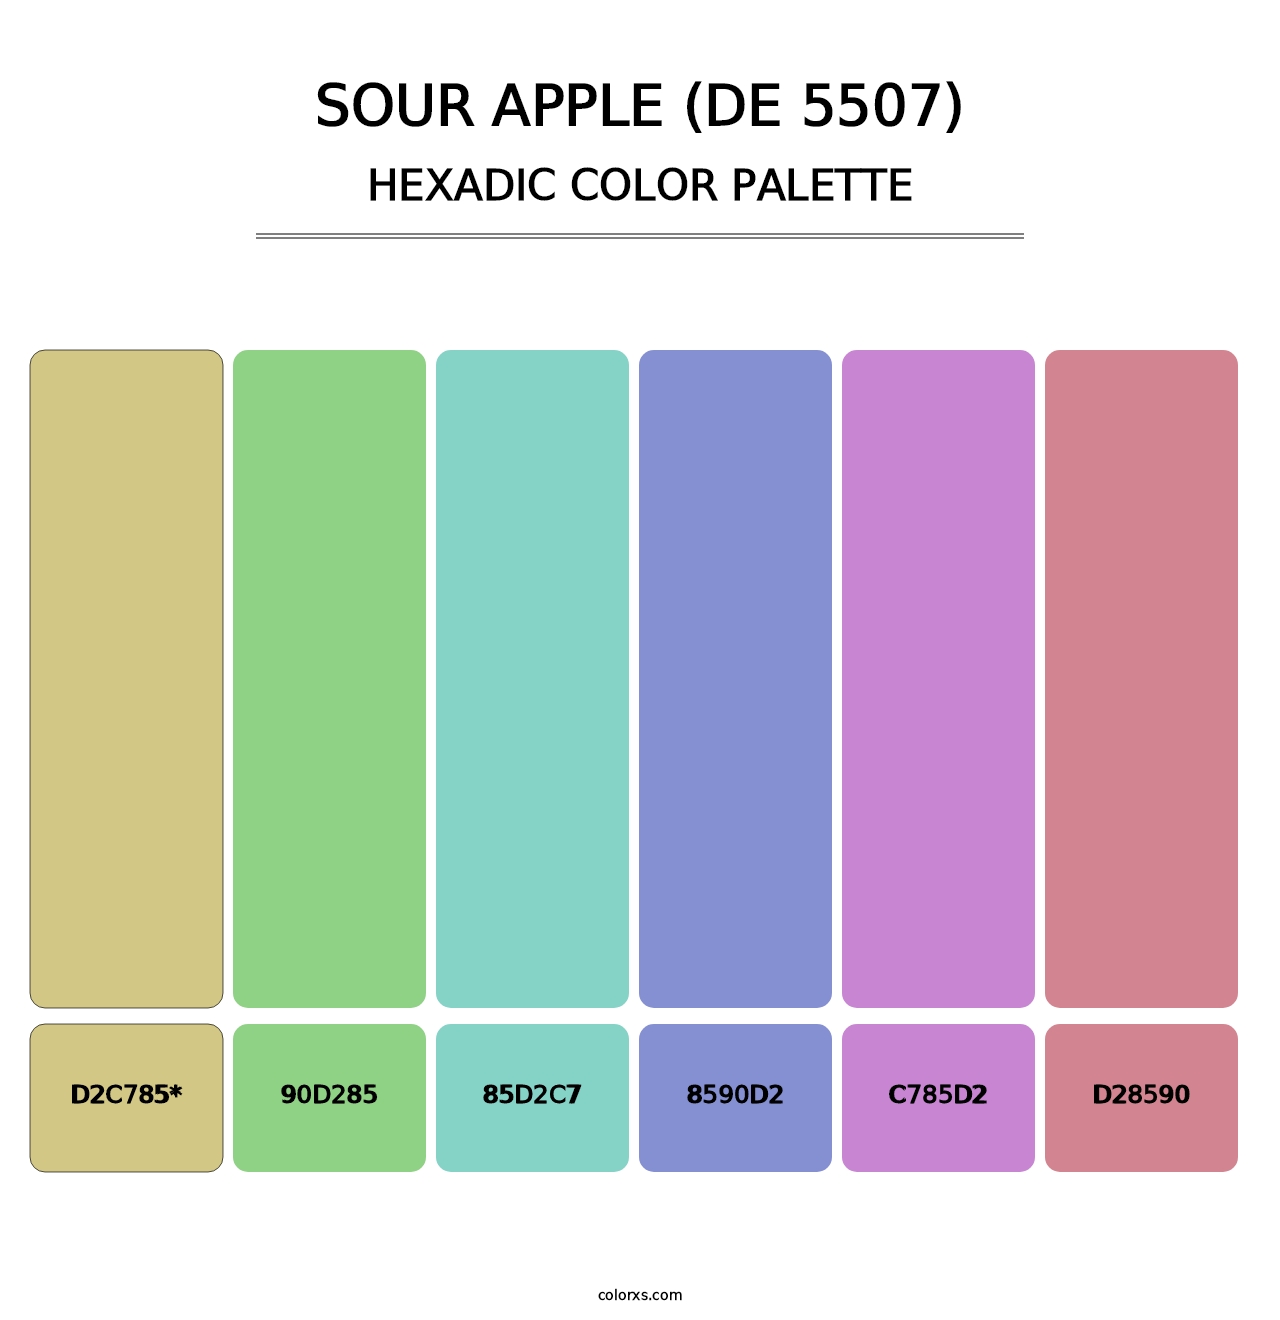 Sour Apple (DE 5507) - Hexadic Color Palette